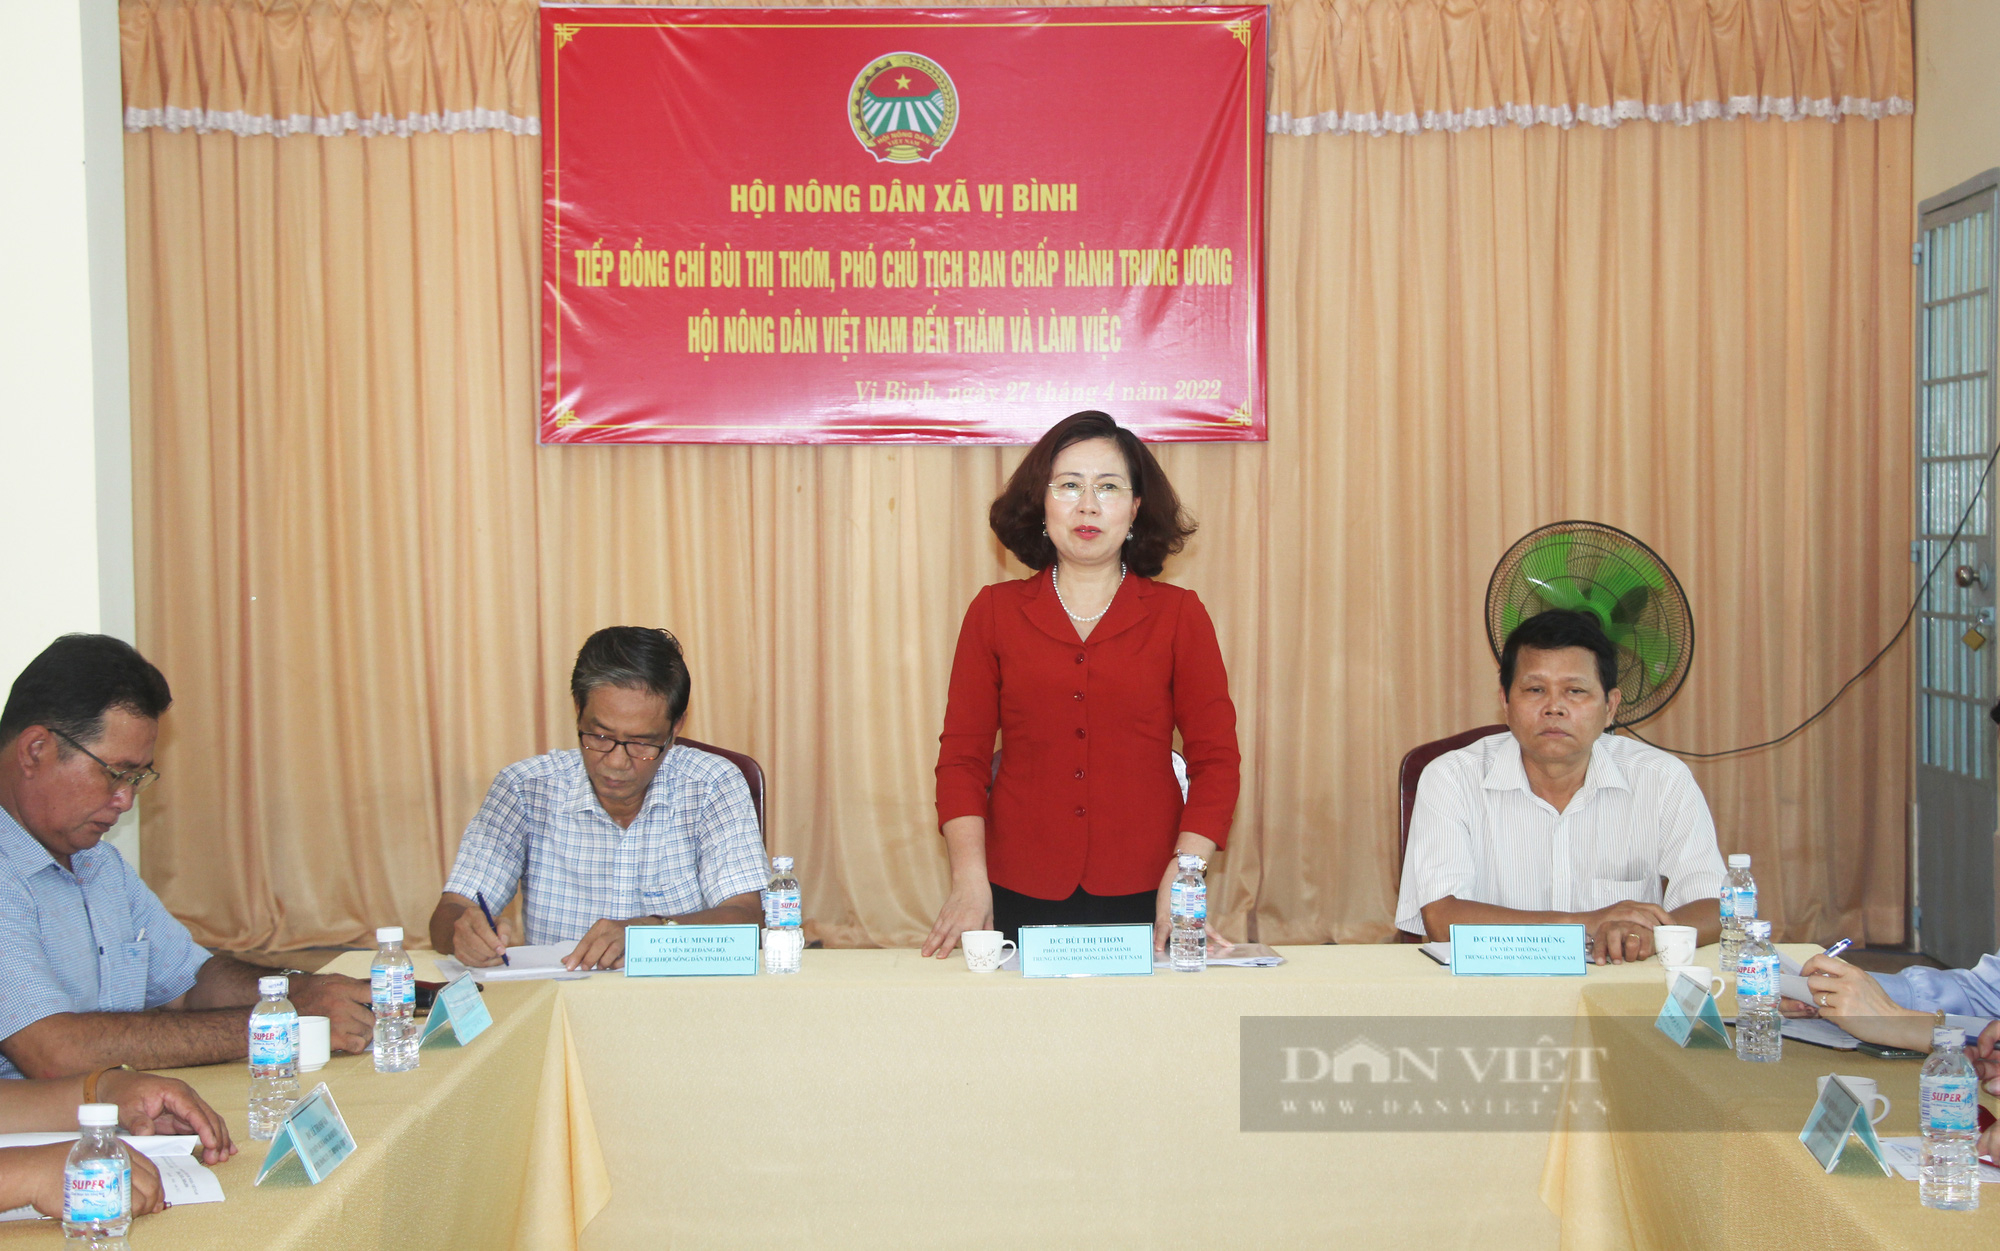 Phó Chủ tịch Hội NDVN Bùi Thị Thơm: Cần quan tâm hơn đến câu chuyện tiêu thụ nông sản cho nông dân Hậu Giang - Ảnh 4.